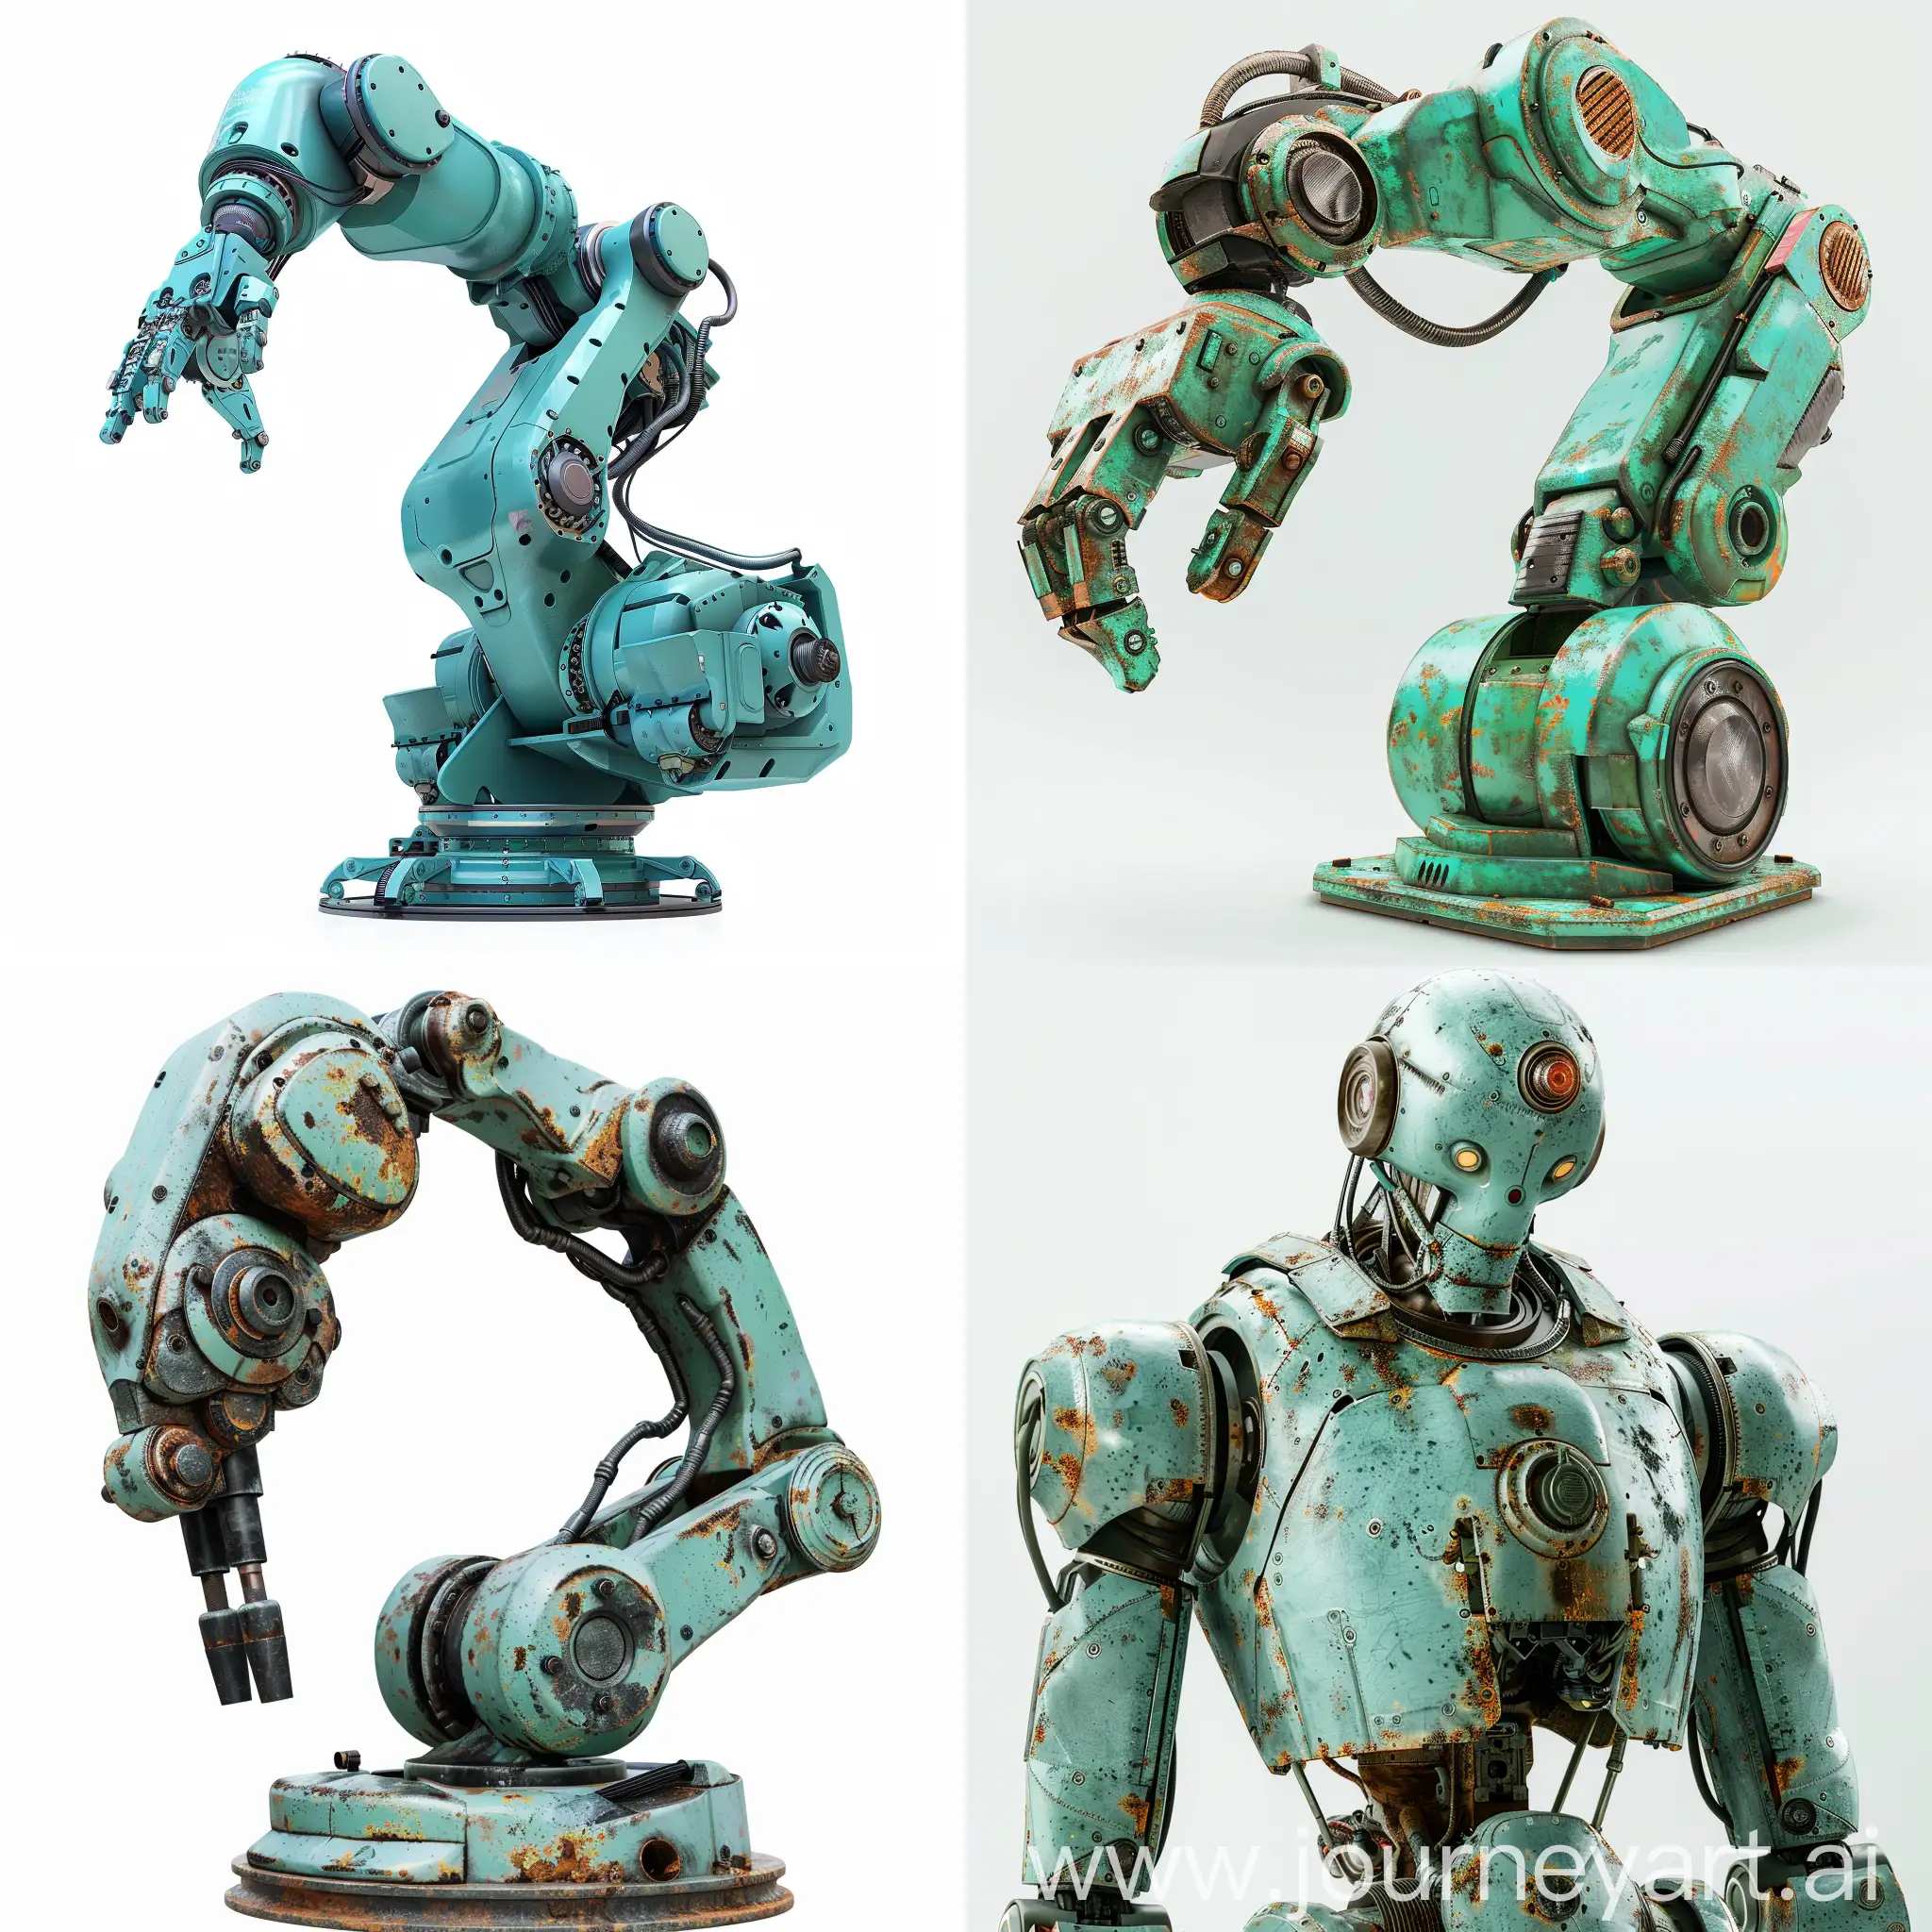 做一个工业机器人图片，白色背景，青绿色的外观，金属材质，单独一个模型